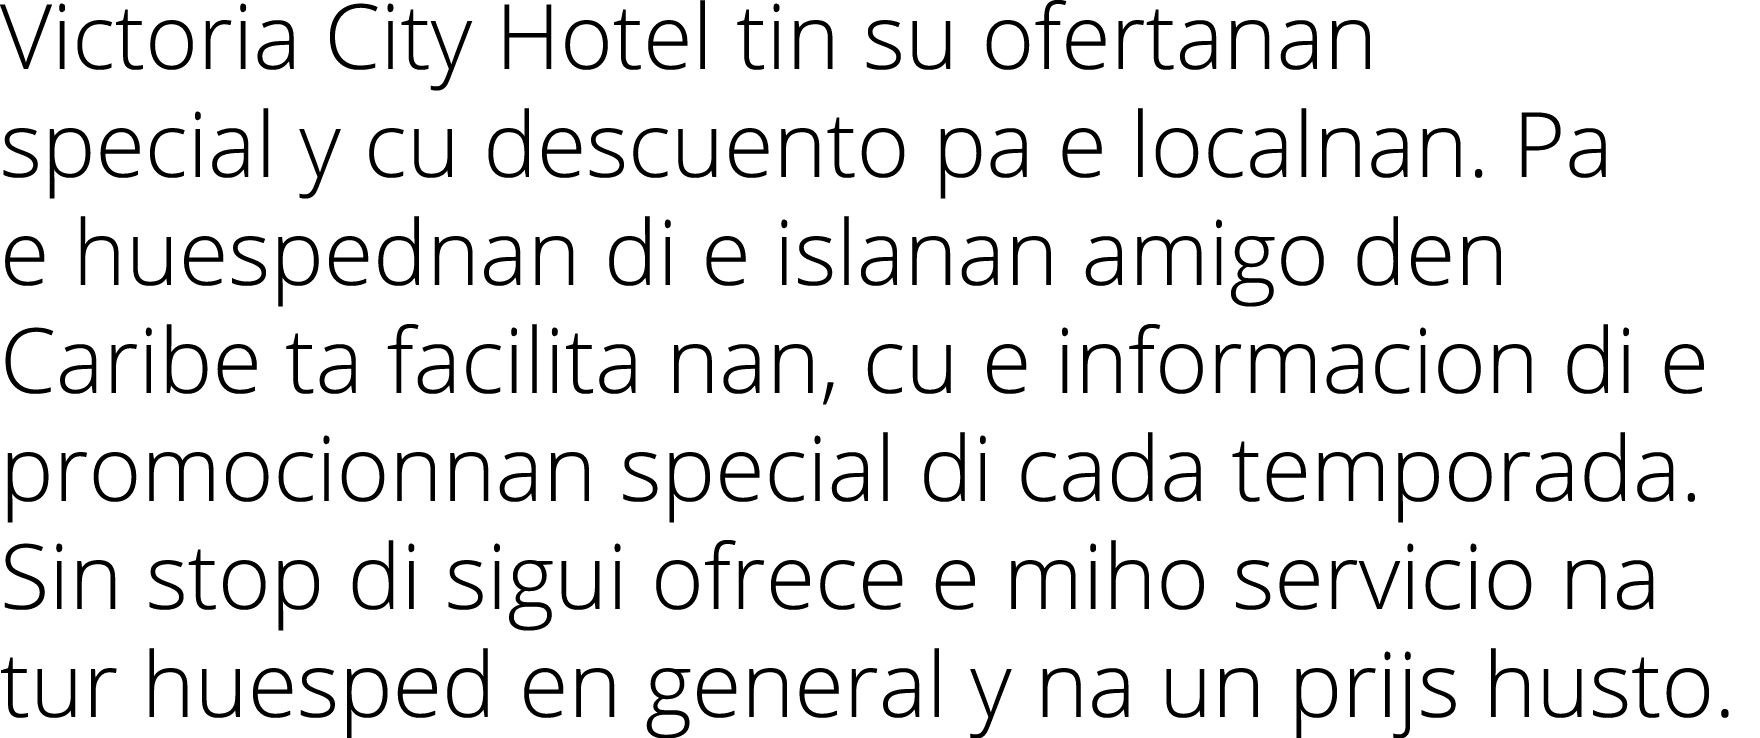 Victoria City Hotel tin su ofertanan special y cu descuento pa e localnan  Pa e huespednan di e islanan amigo den Car   